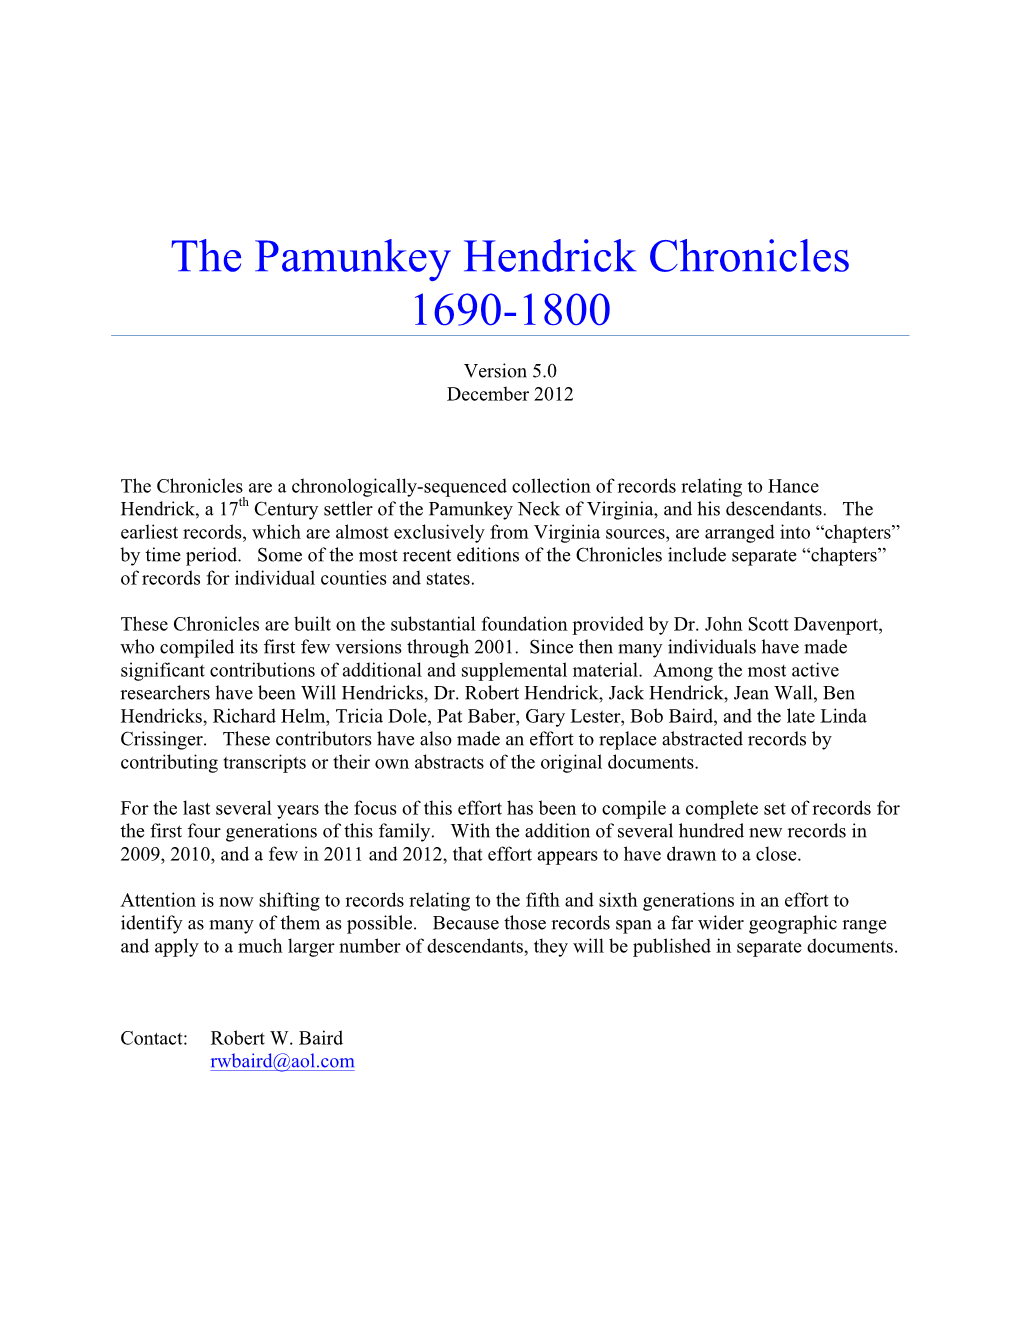 The Pamunkey Hendrick Chronicles 1690-1800